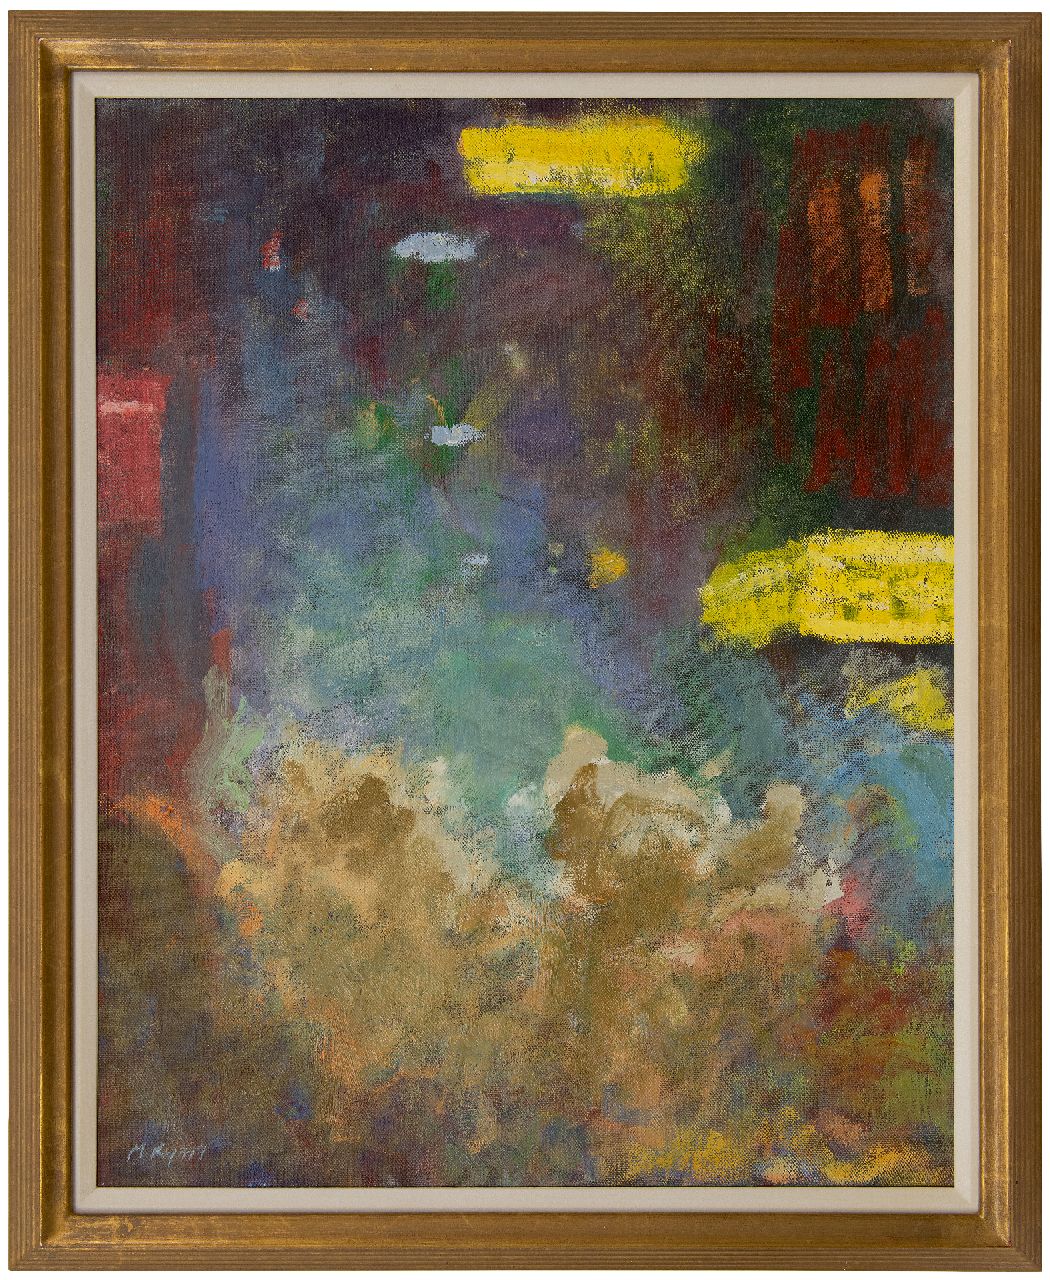 Ryan M.  | Michael Ryan | Gemälde zum Verkauf angeboten | Amsterdam bei Nacht, Öl auf Leinwand 75,0 x 60,4 cm, Unterzeichnet l.u.